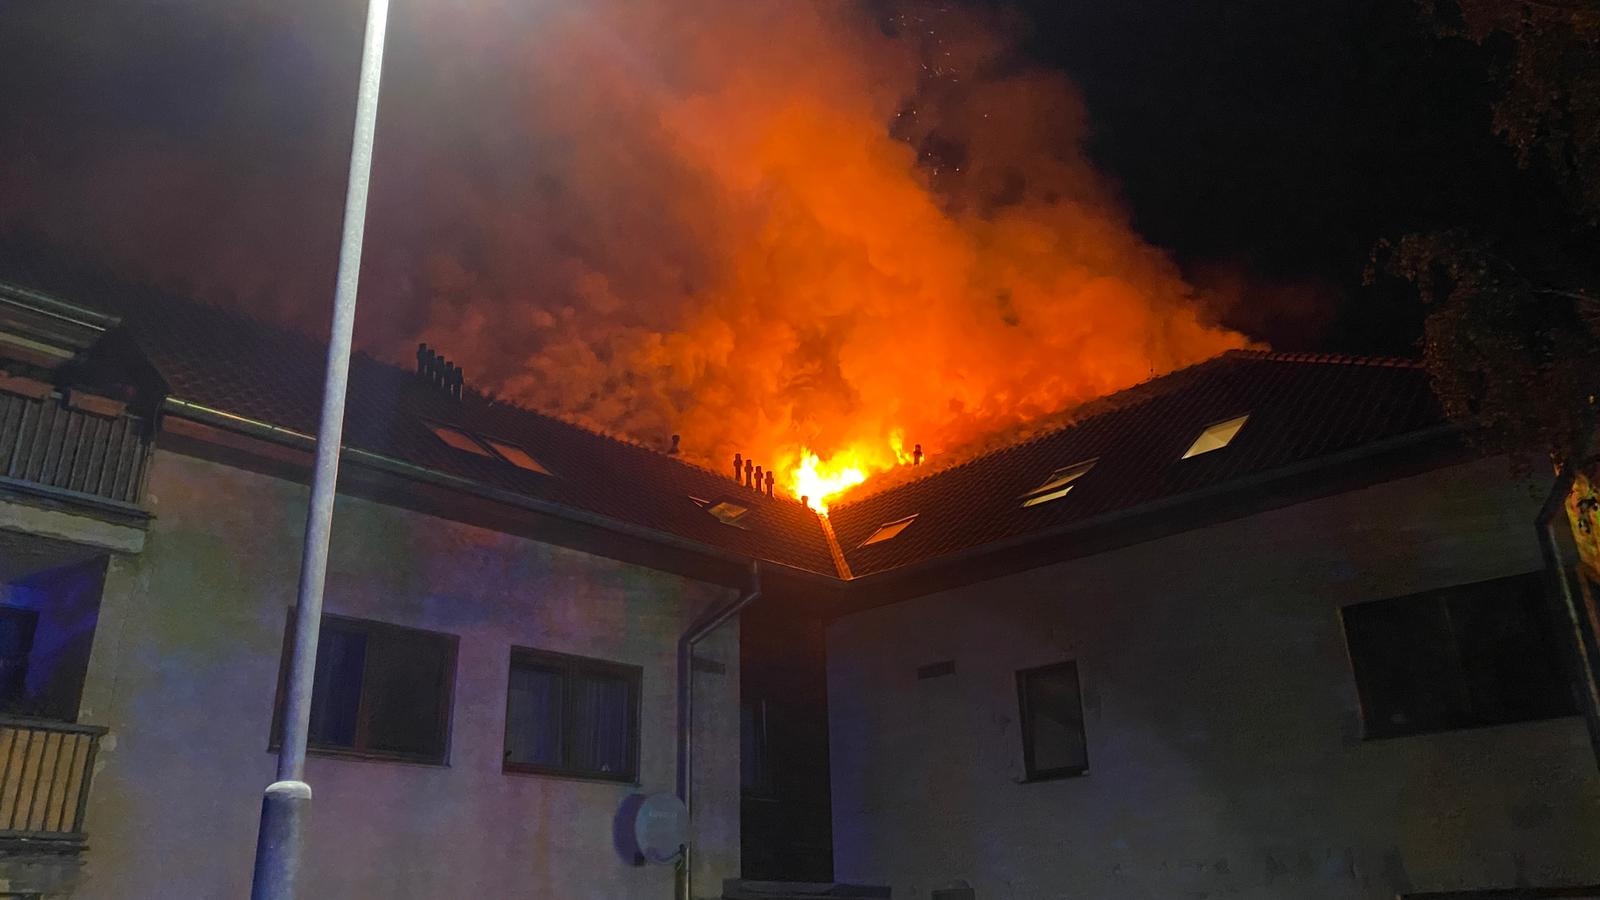 043 - Požár střechy rodinného domu v Brozánkách na Mělnicku.jpg